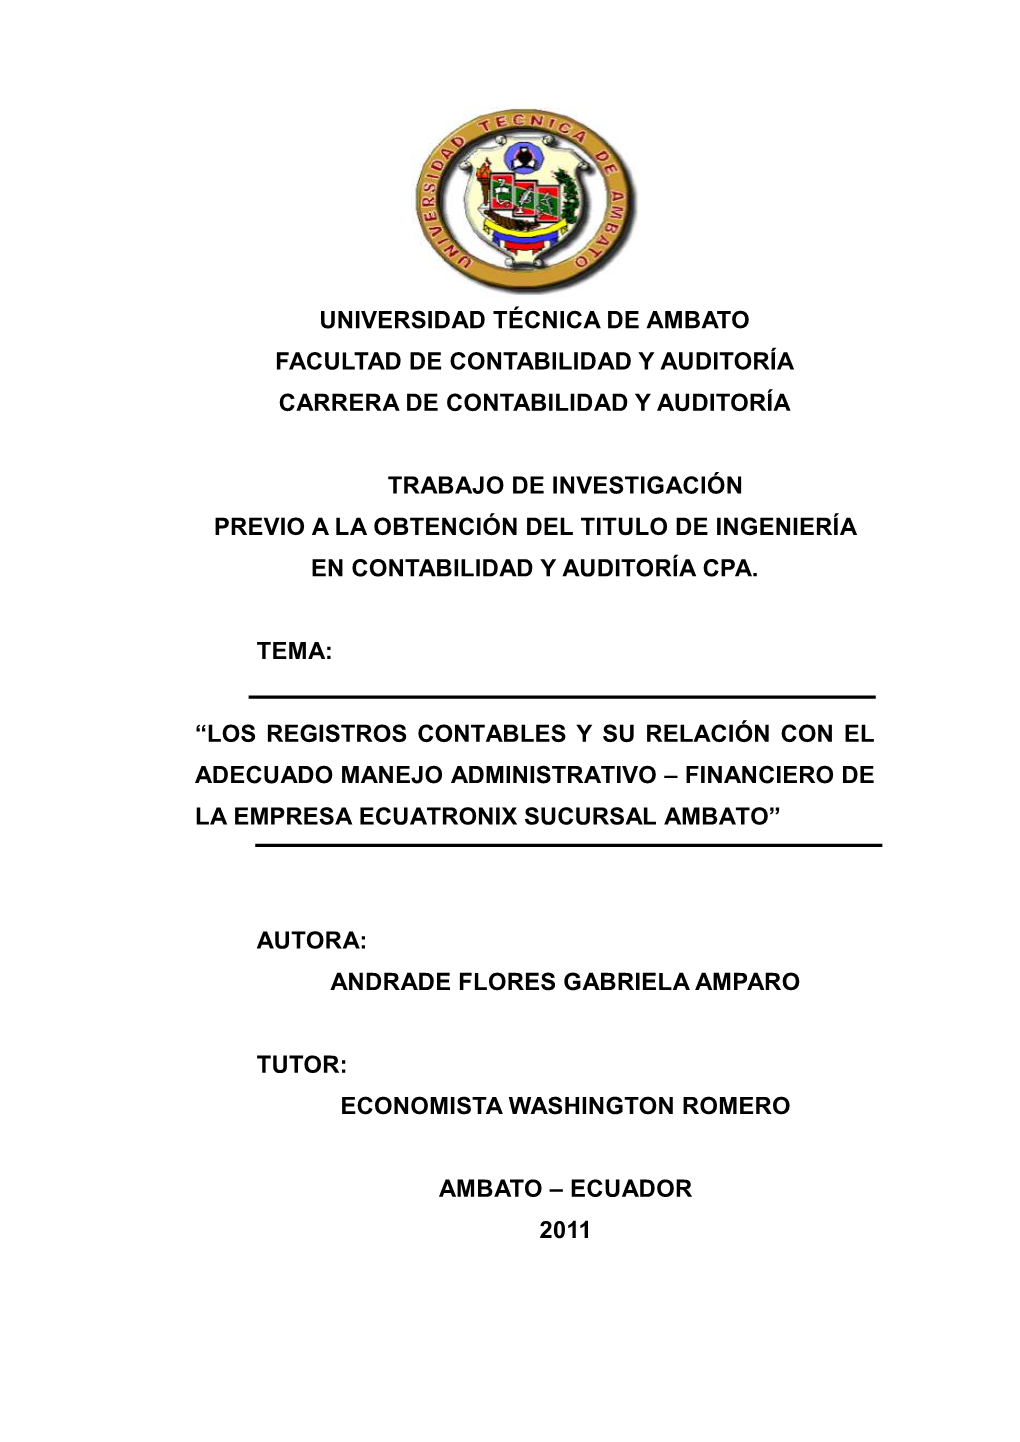 Universidad Técnica De Ambato Facultad De Contabilidad Y Auditoría Carrera De Contabilidad Y Auditoría